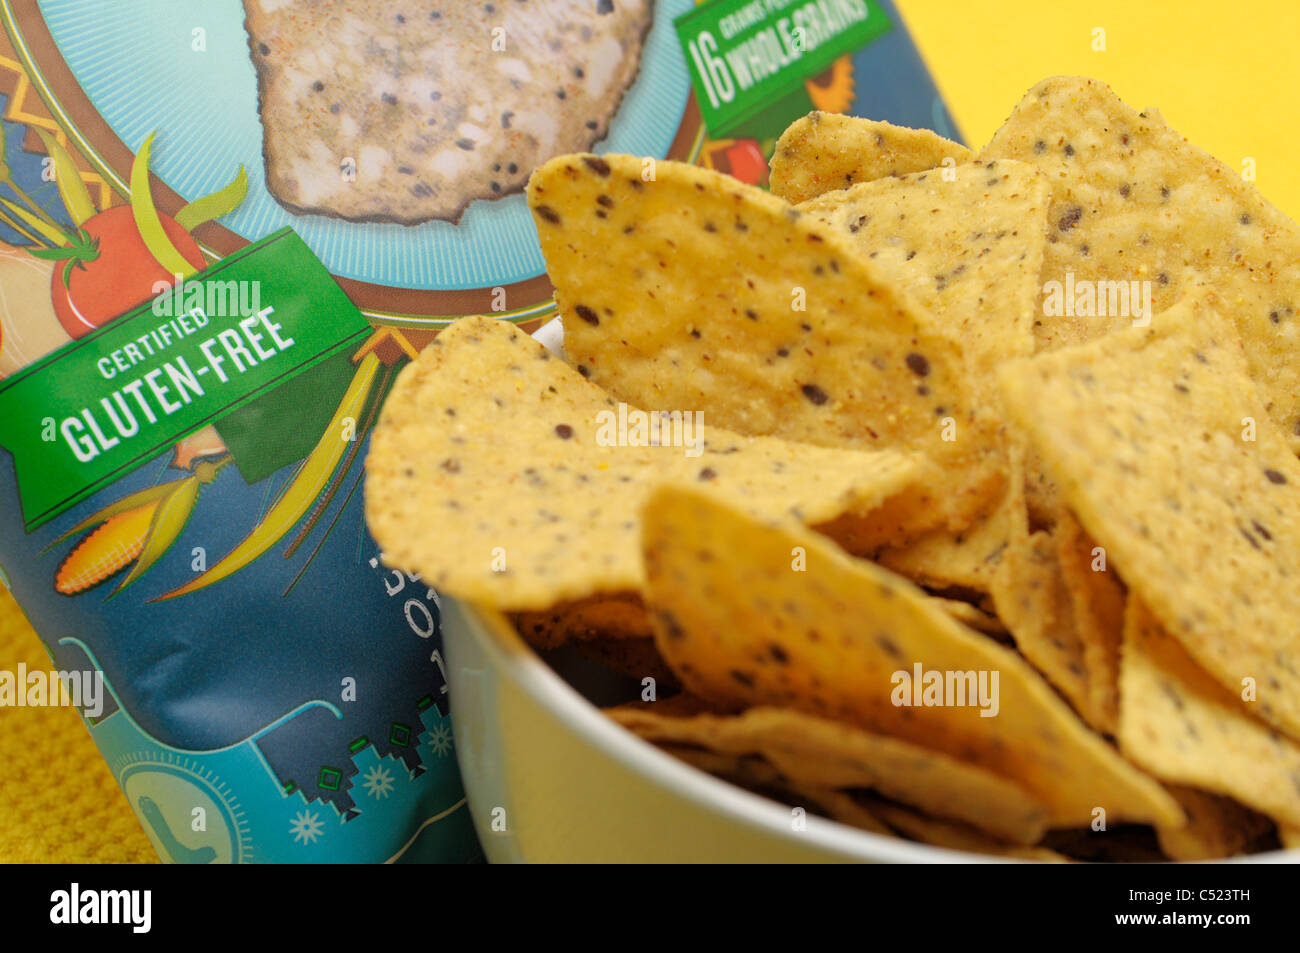 Gluten freie Lebensmittel Produkte Chips / Nachos Stockfoto